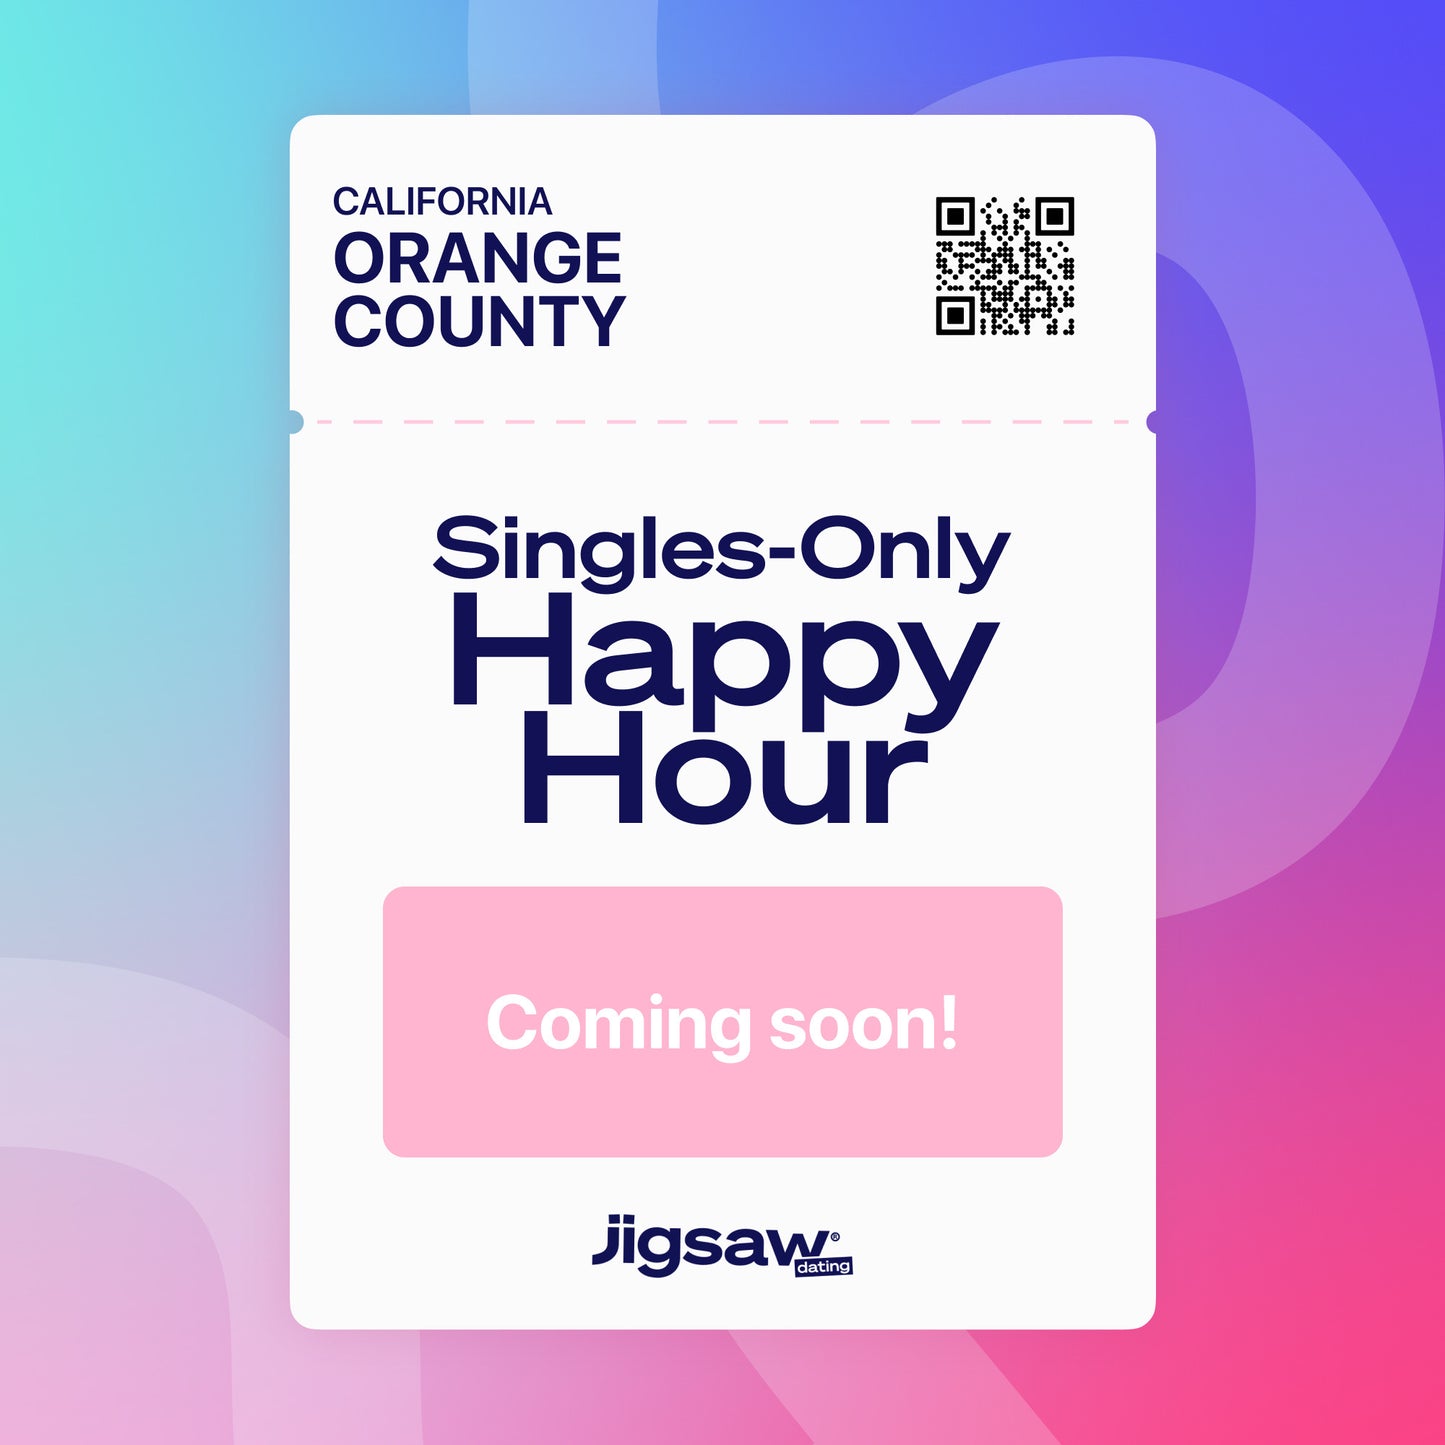 ORANGE COUNTY: Singles Happy Hour